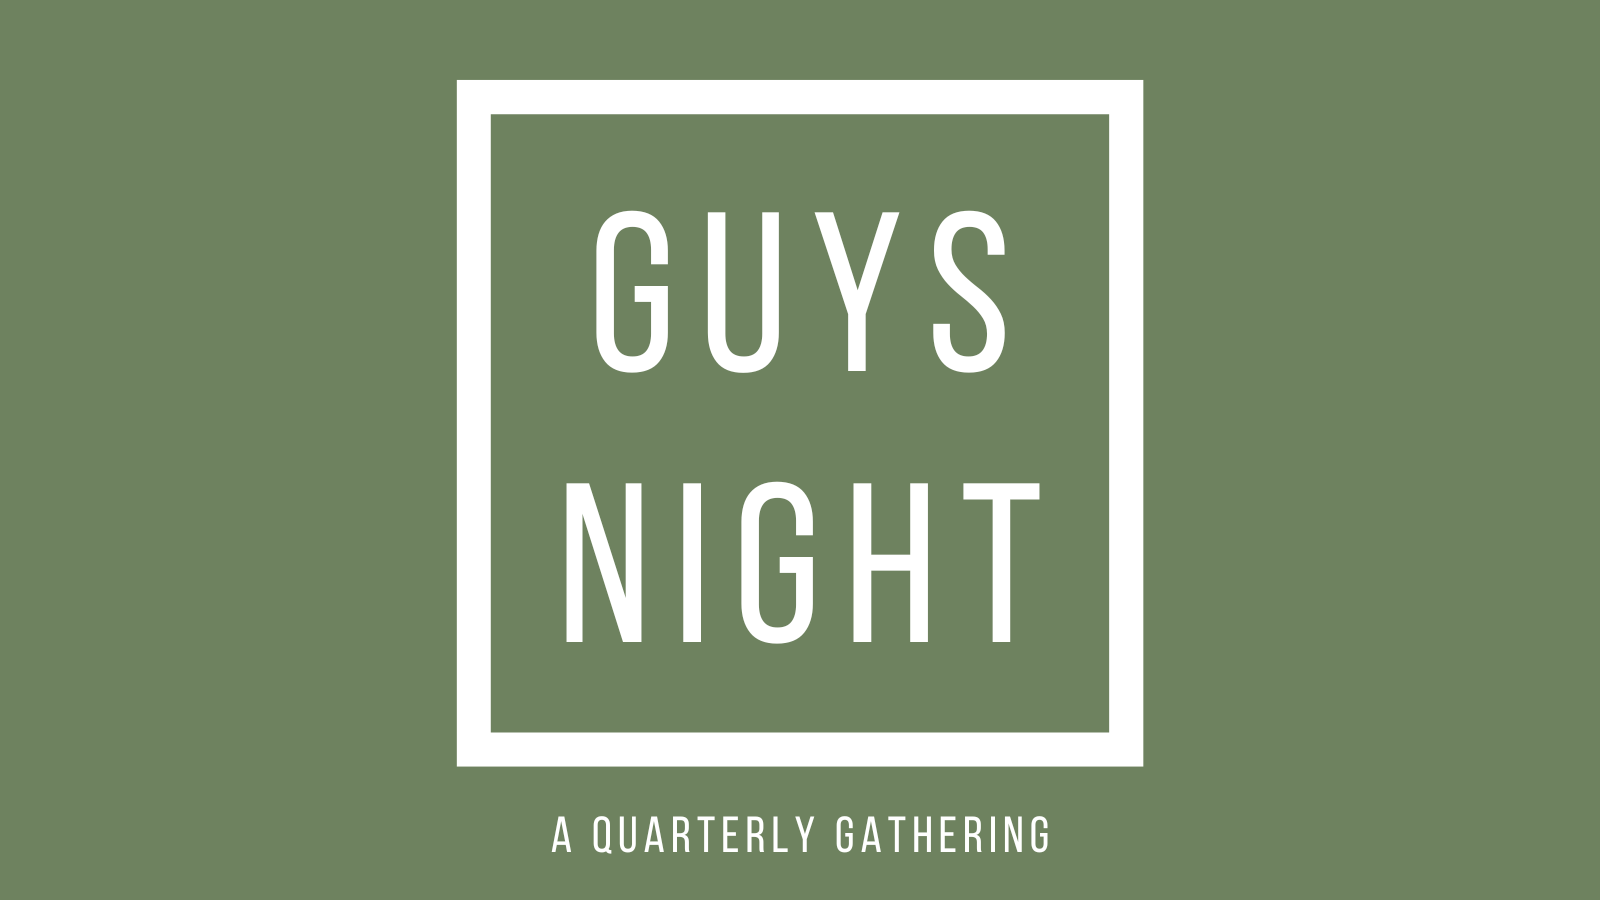 guys night 24 (1600 × 900 px) image